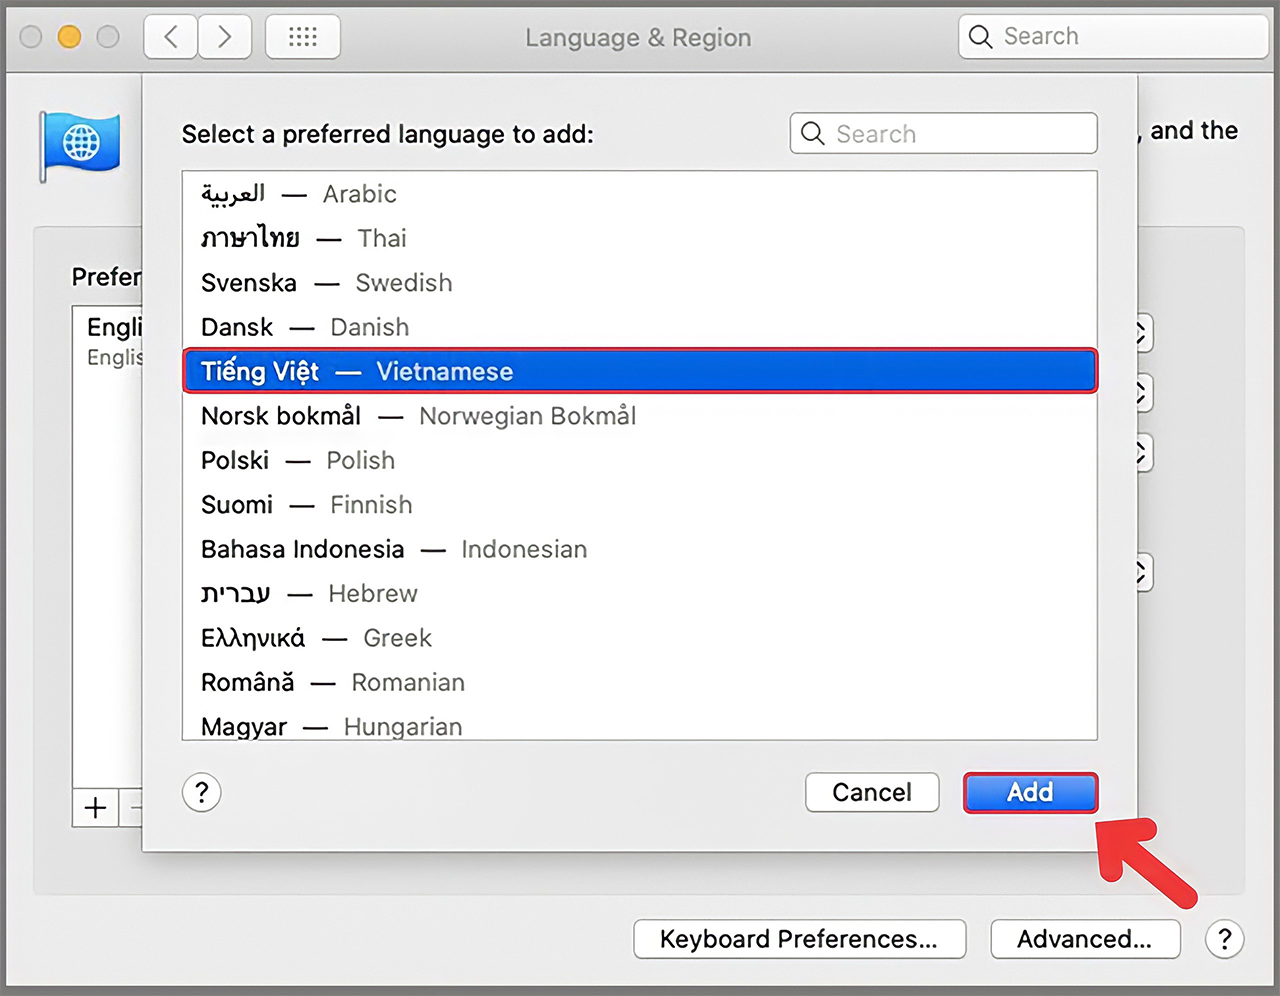 Đừng để ngôn ngữ giới hạn trải nghiệm của bạn trên MacBook! Cùng tìm hiểu cách đổi ngôn ngữ hiệu quả và dễ dàng với hình ảnh liên quan đến việc chuyển đổi ngôn ngữ sang tiếng Việt trên MacBook.